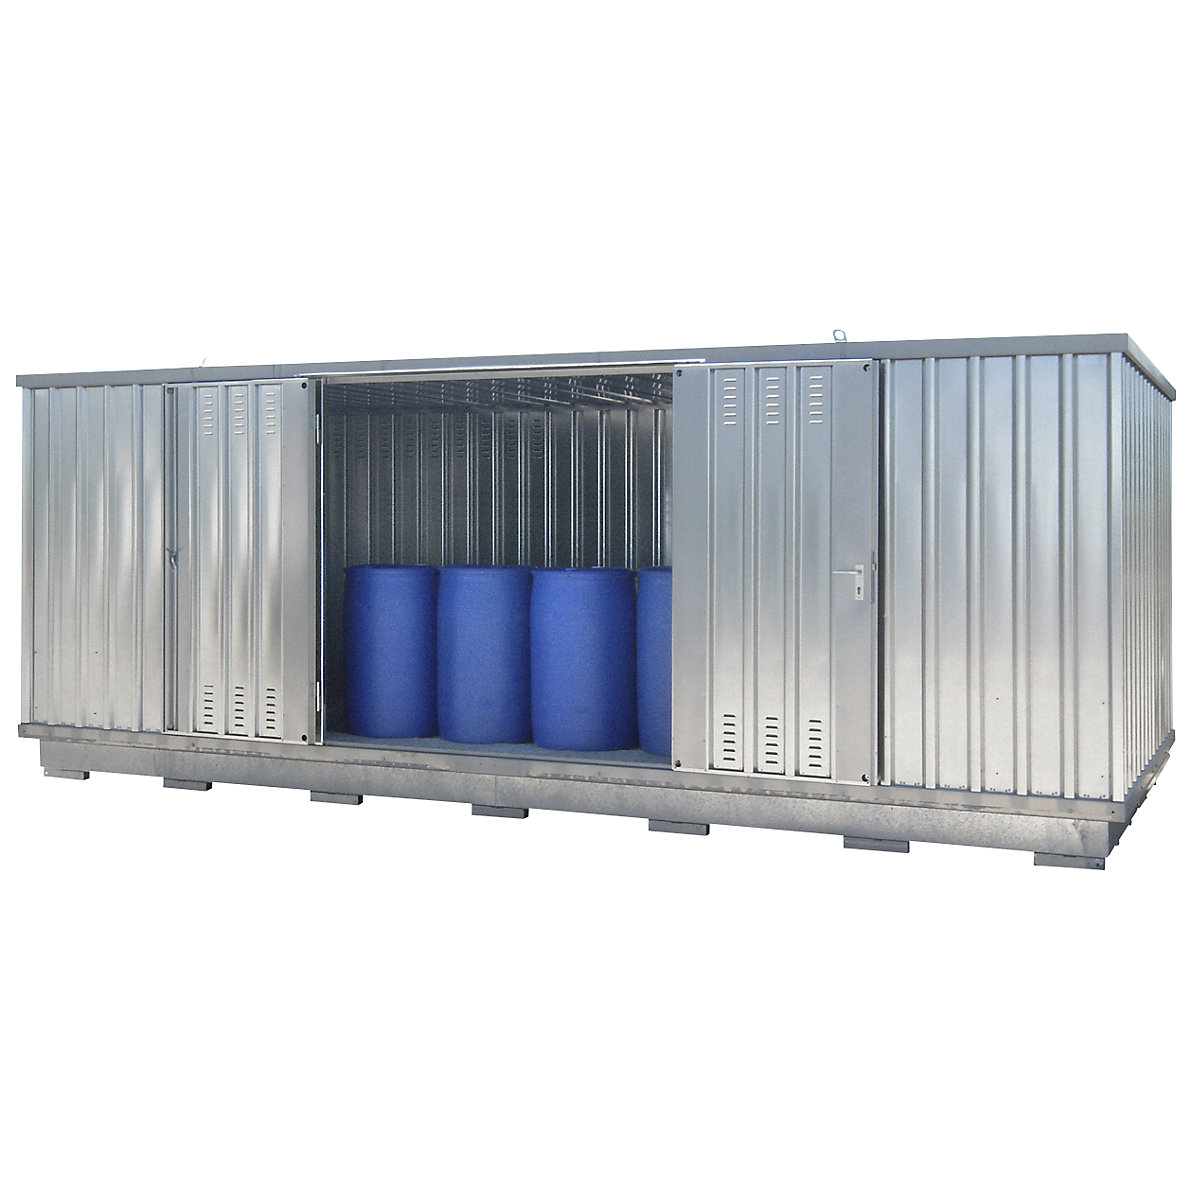 Gefahrstoff-Container zur aktiven Lagerung entzündbarer Stoffe